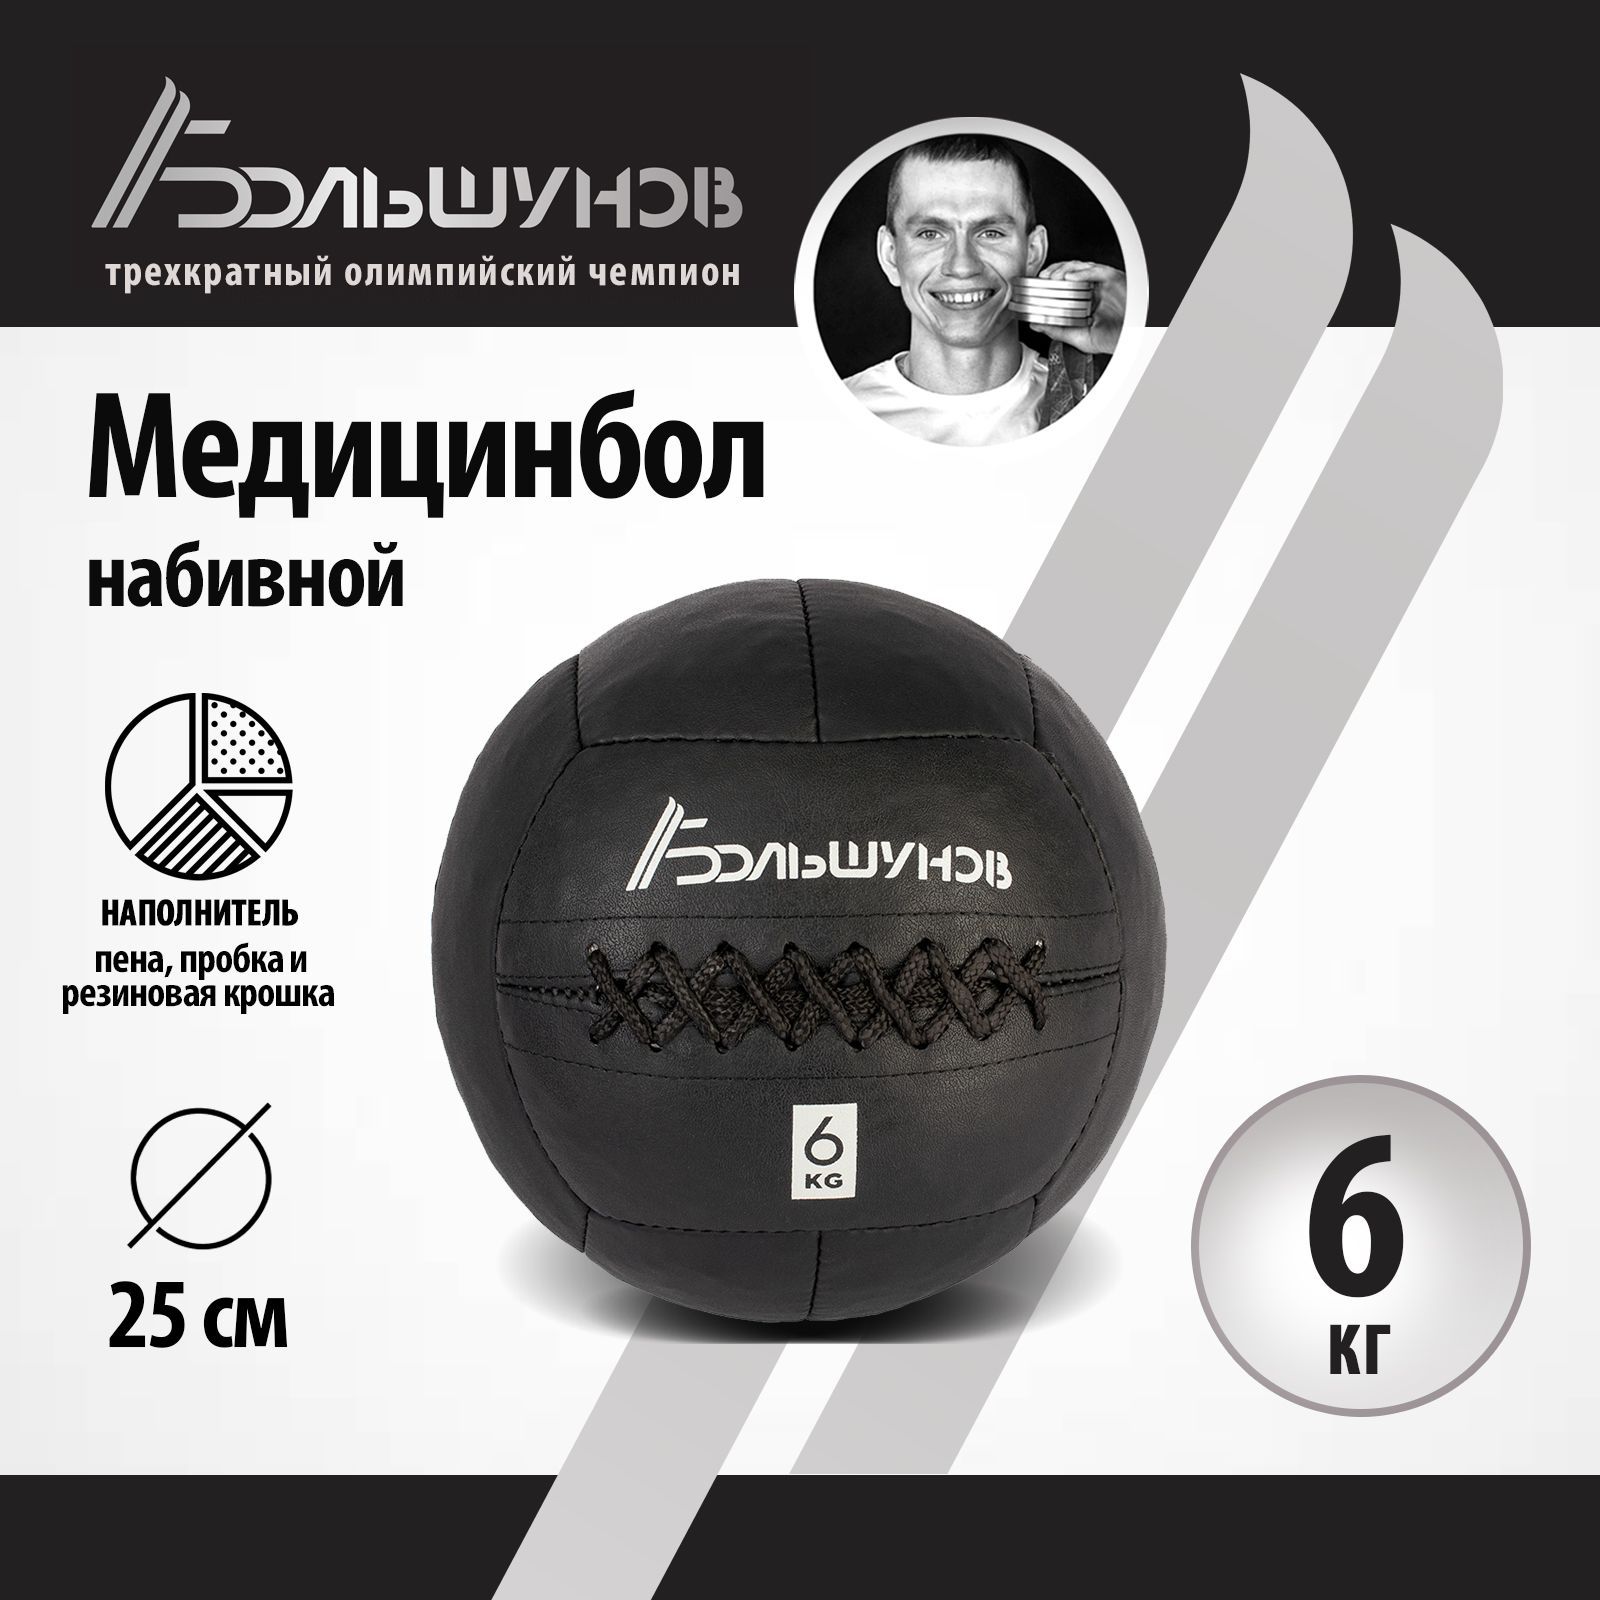 Медбол Александр Большунов, 25см, 6 кг